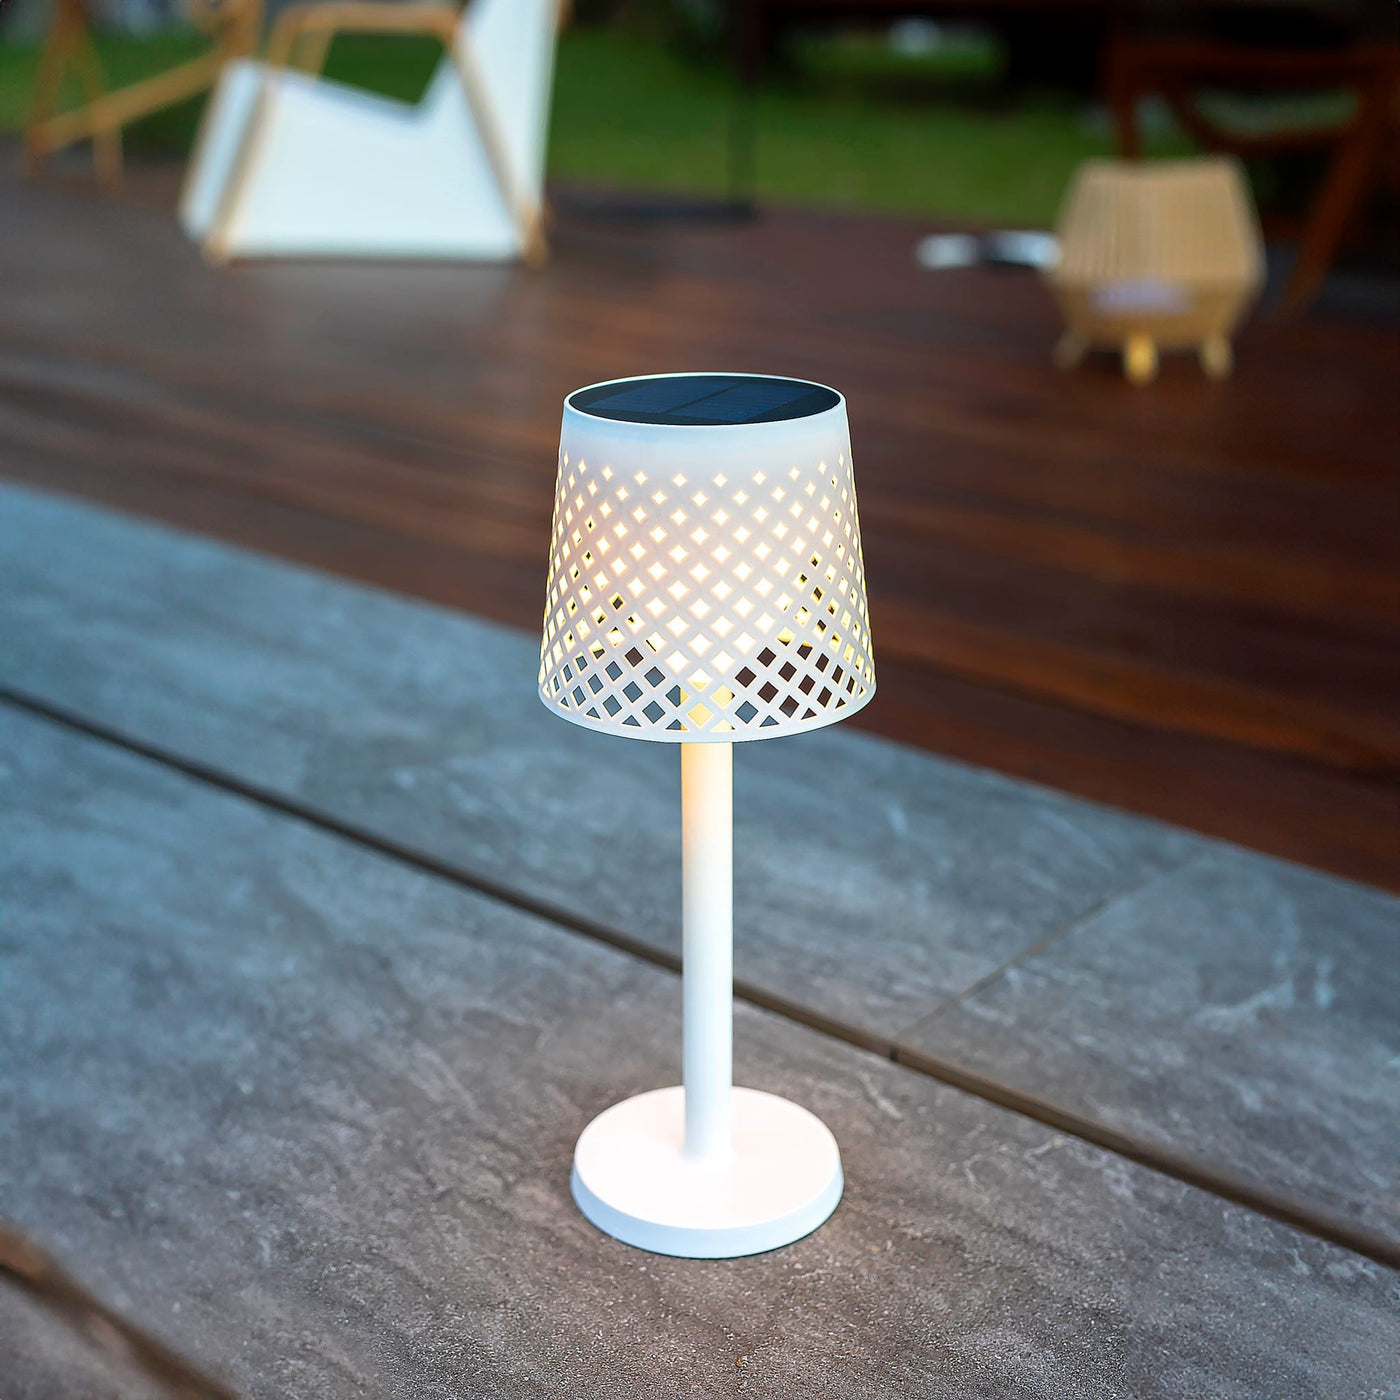 Lampe solaire Greta de Newgarden : 5 configurations possibles, allumage automatique ou manuel. Recharge solaire et USB. Écologique, fabriquée avec des matériaux recyclés.